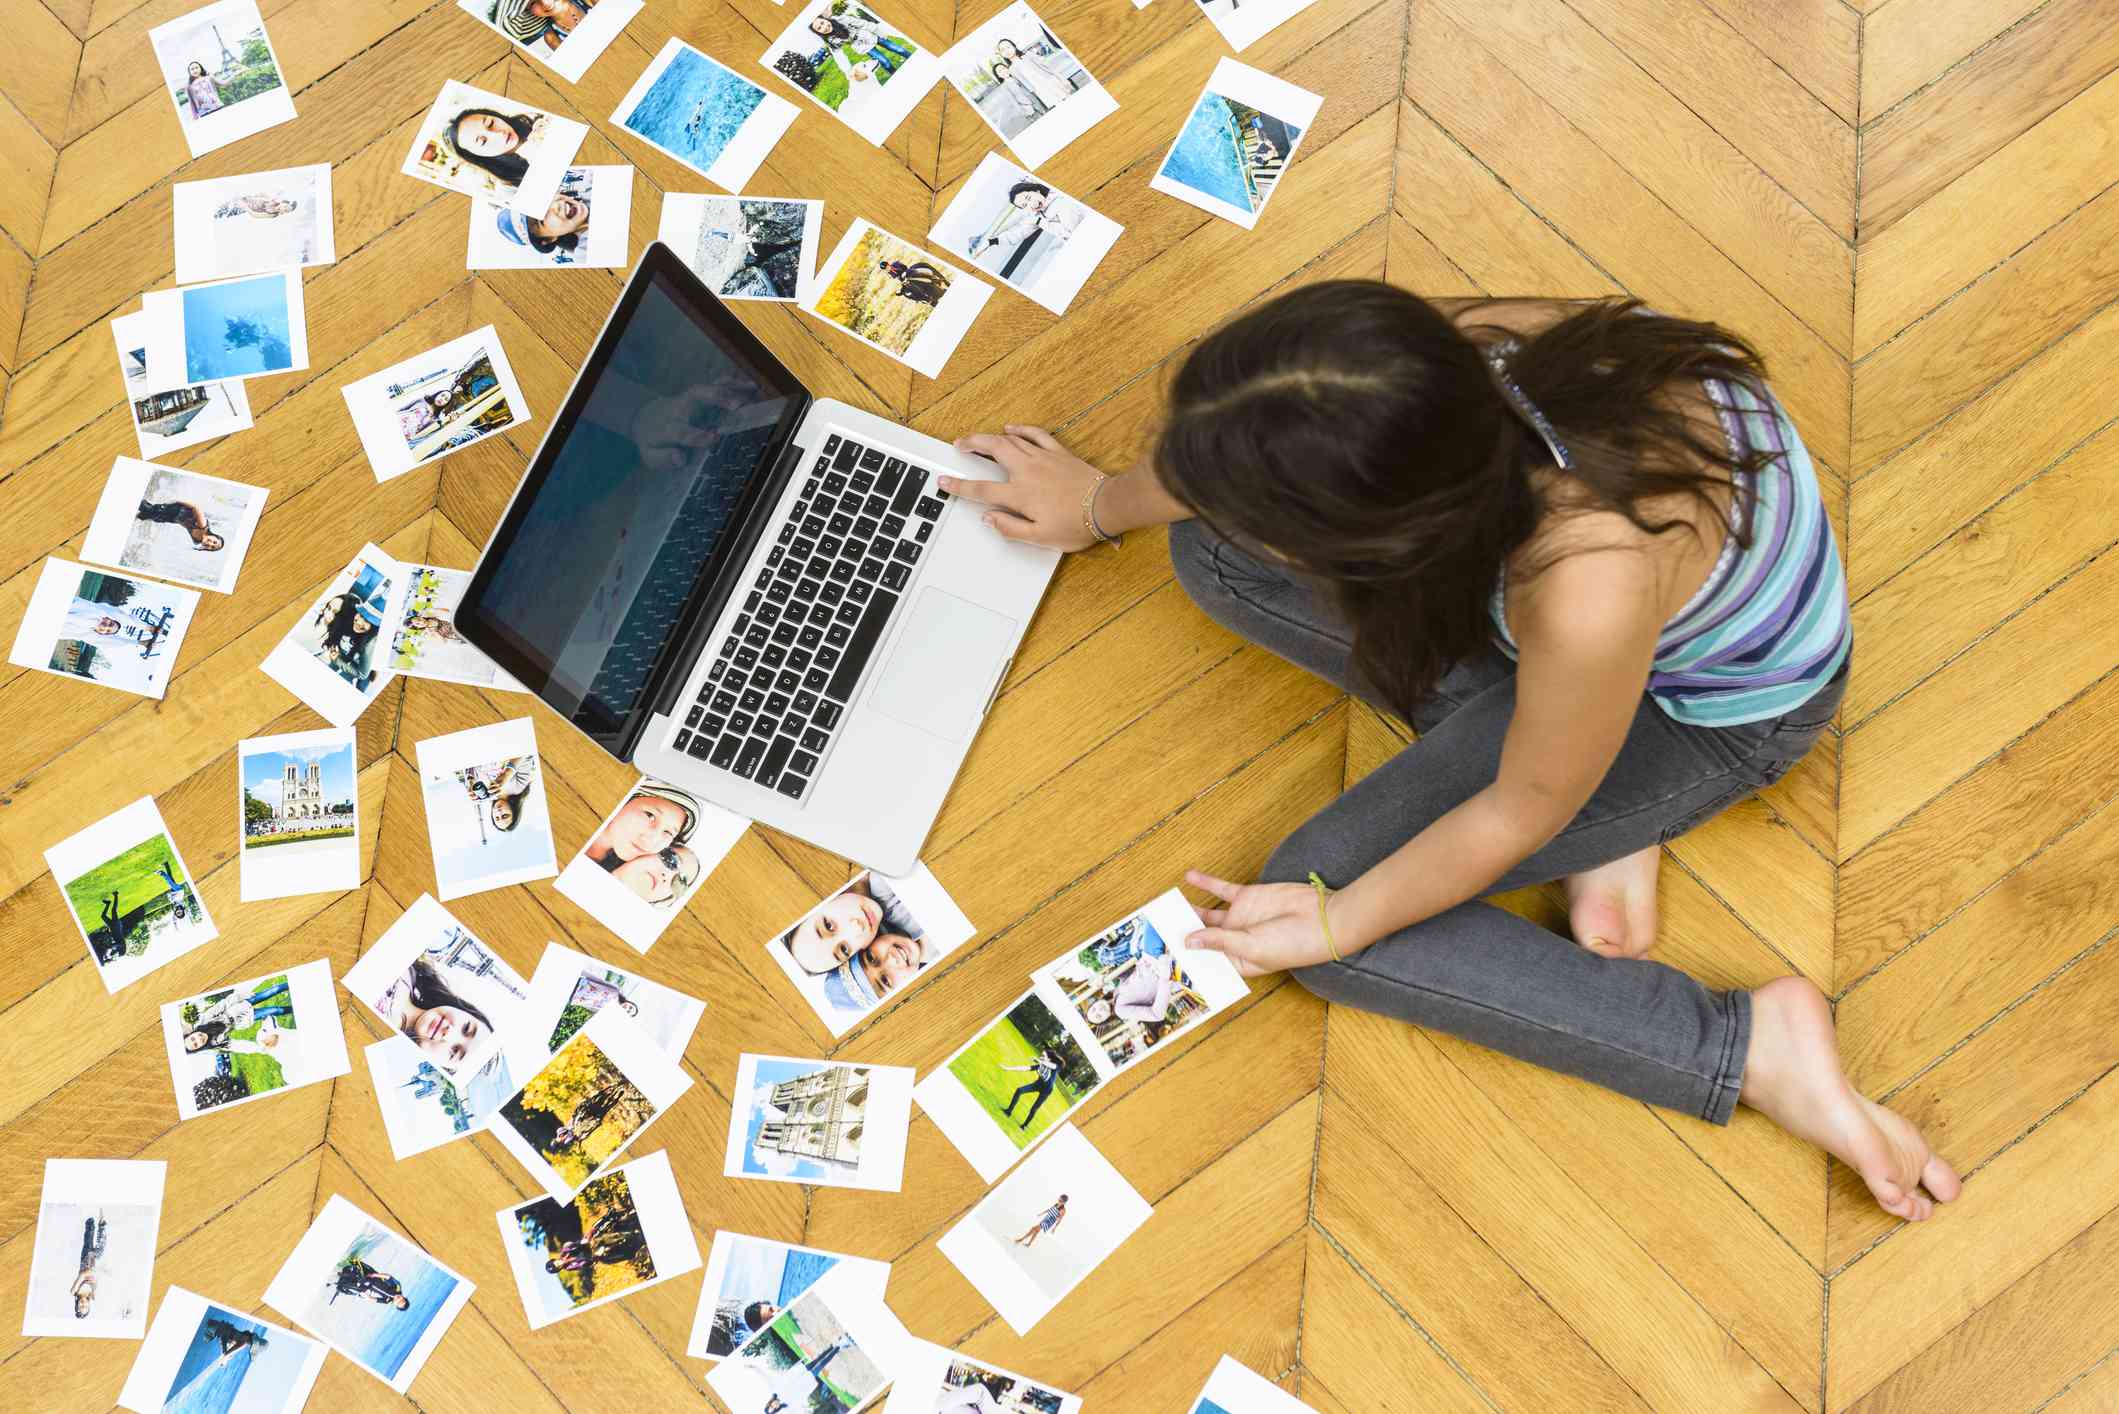 Iemand die op de grond zit te kijken naar foto's op een laptop met overal foto's.